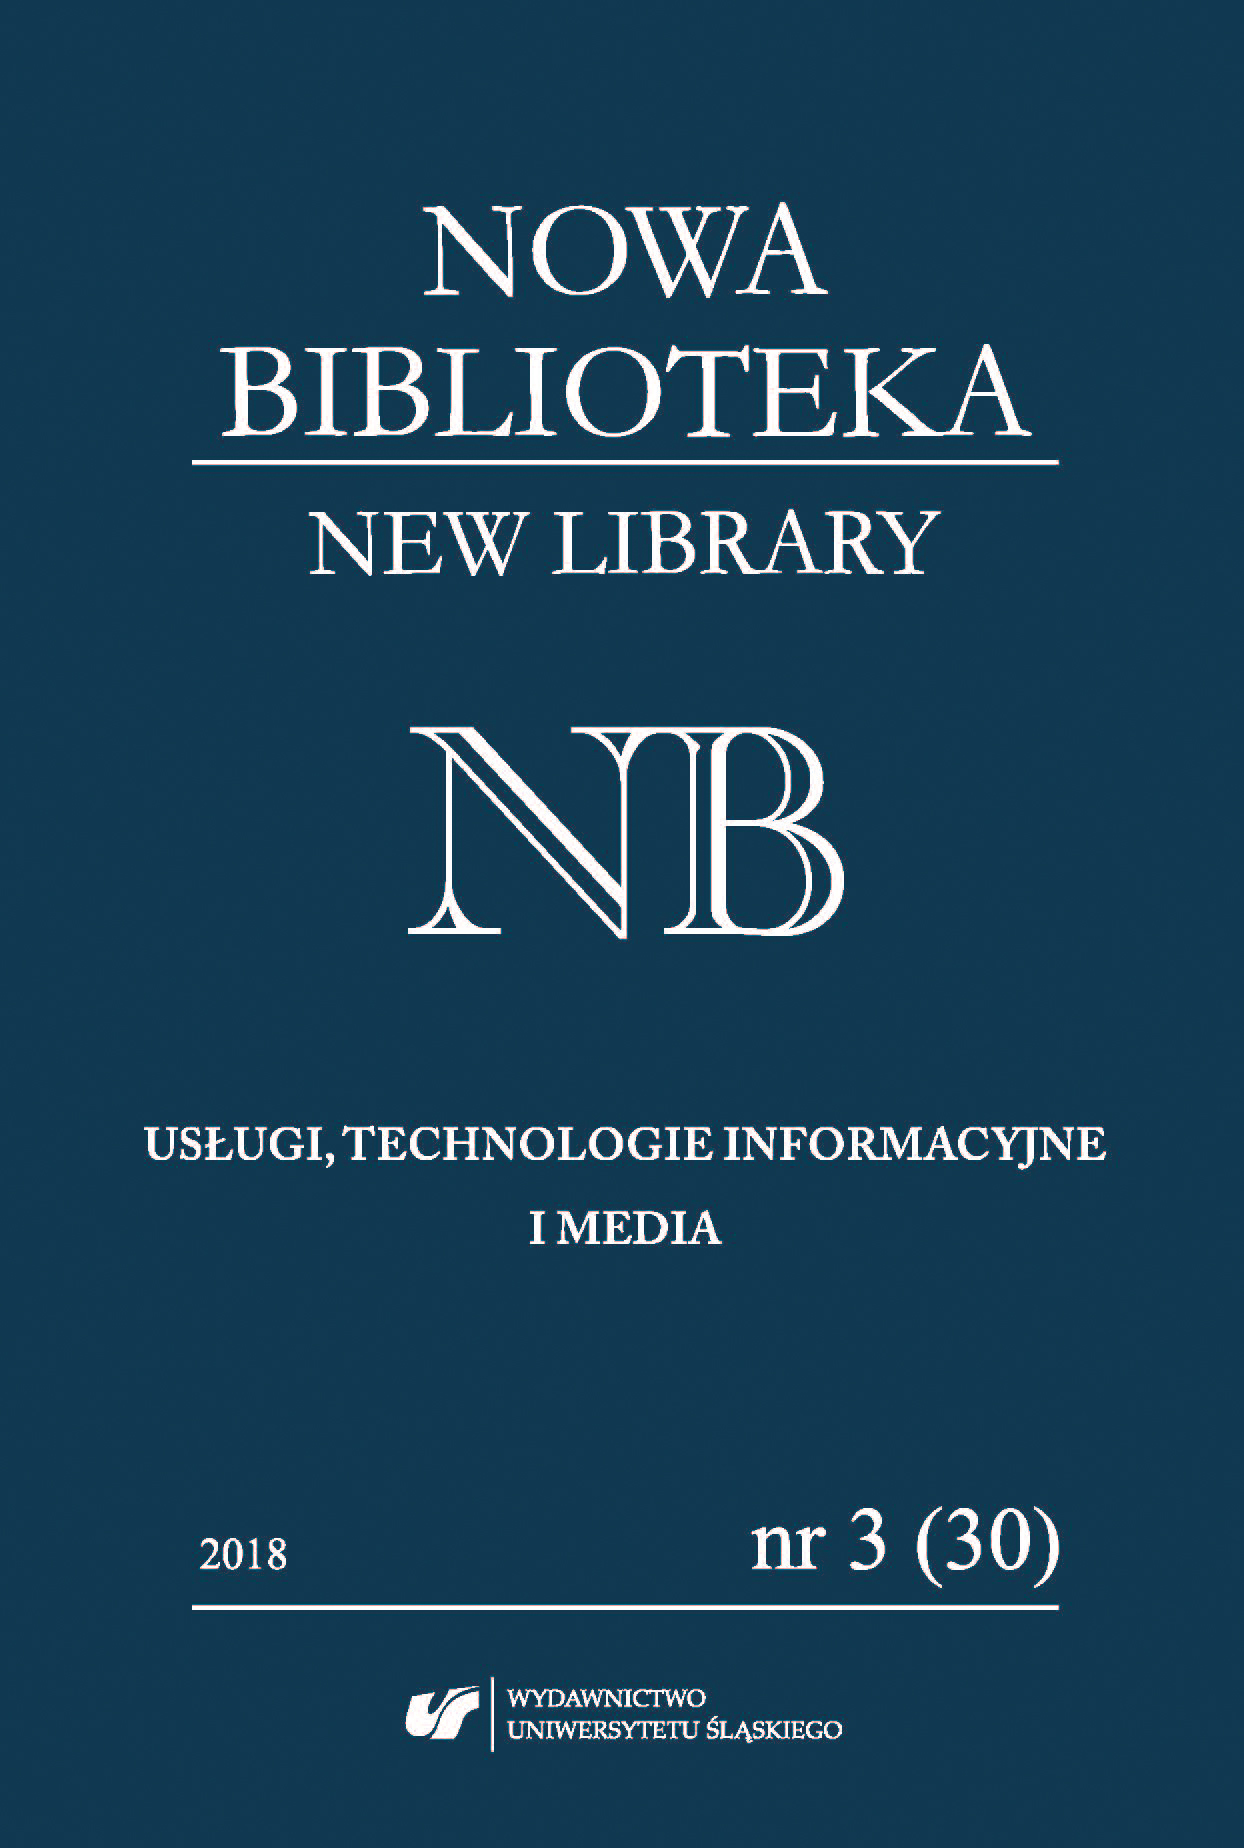 Serie wydawnicze publikowane przez wybrane biblioteki wojewódzkie w latach 2000–2015